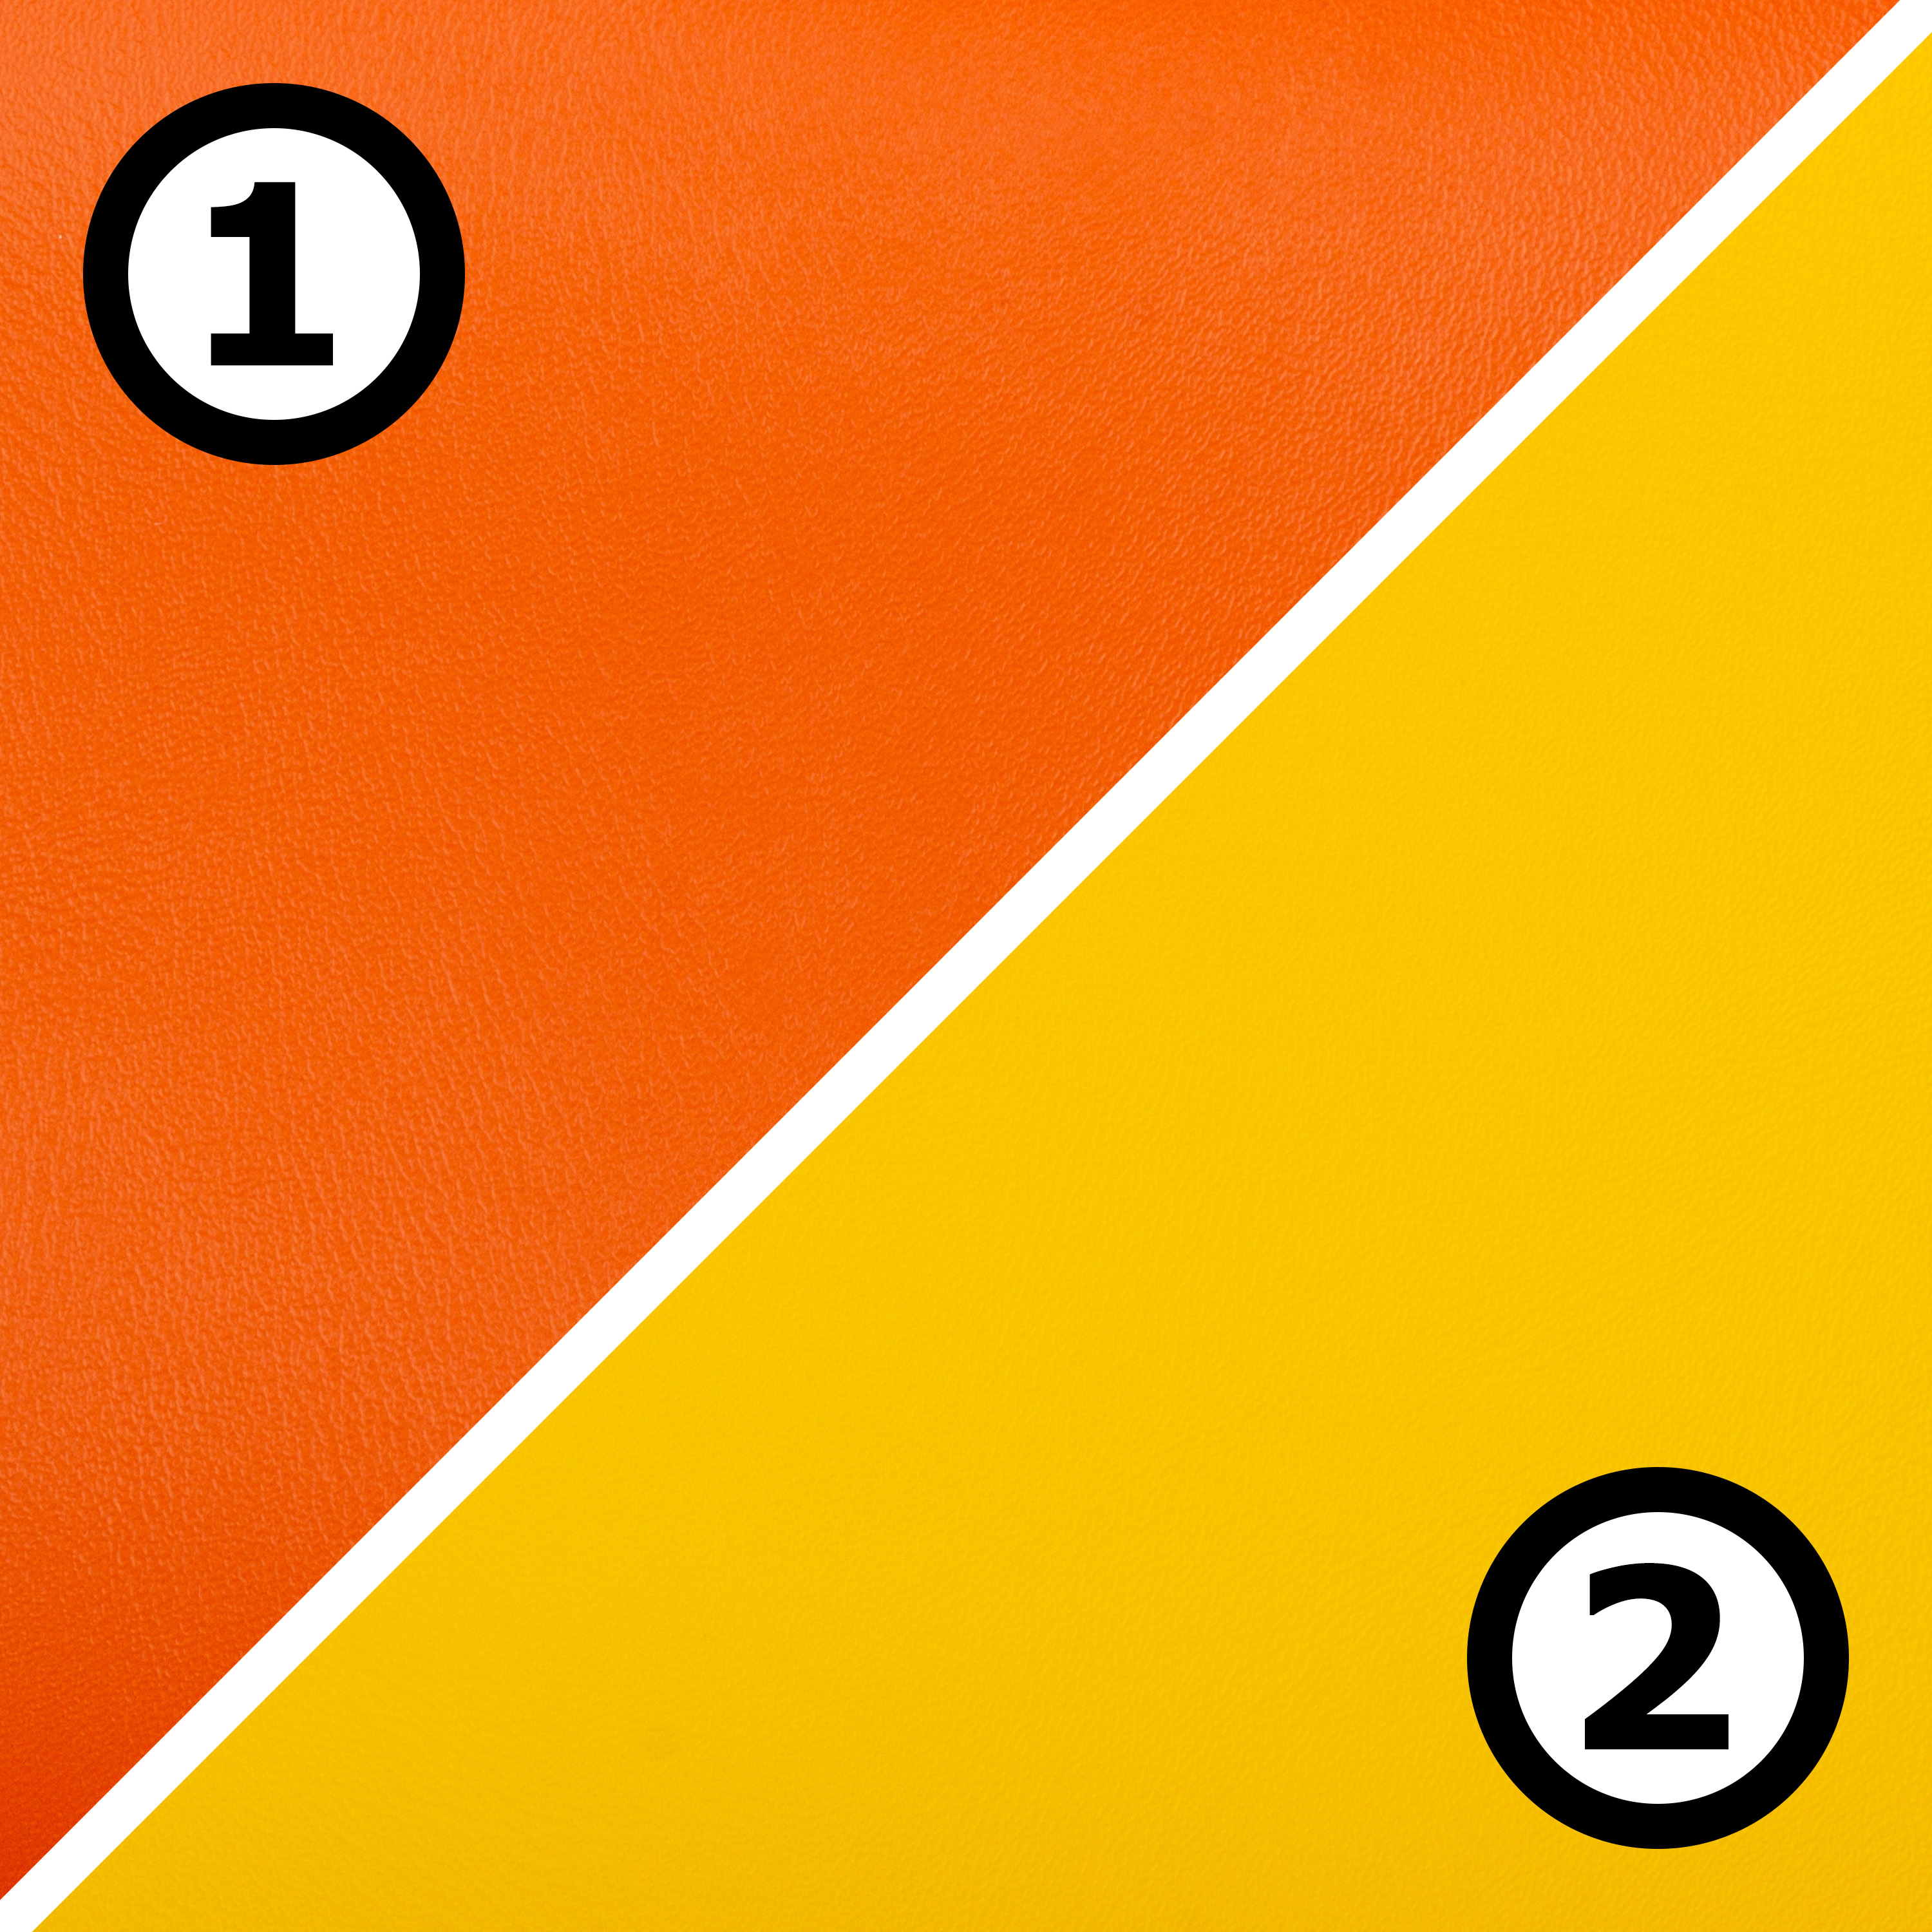 Liegepolster 'Premium' 120 x 60 x 8 cm, orange/gelb